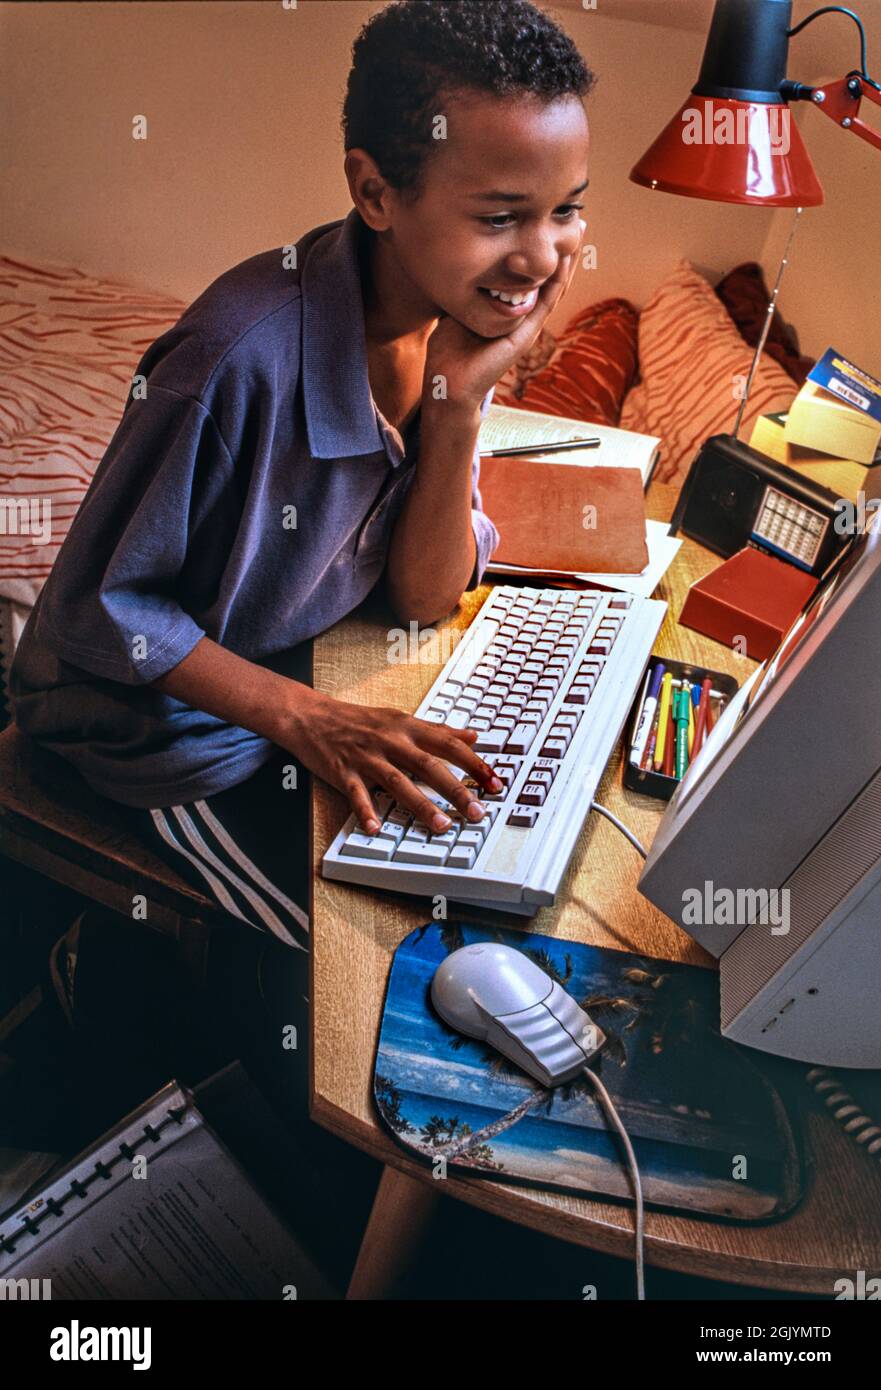 First Computer Fashion Style 1990s Surfen Schlafzimmer Boy 7-9 Jahre Afrikanische Karibik in seinem Schlafzimmer glücklich entspannt Surfen spielen Studium auf seinem ersten Computer 1995 Ära Stockfoto